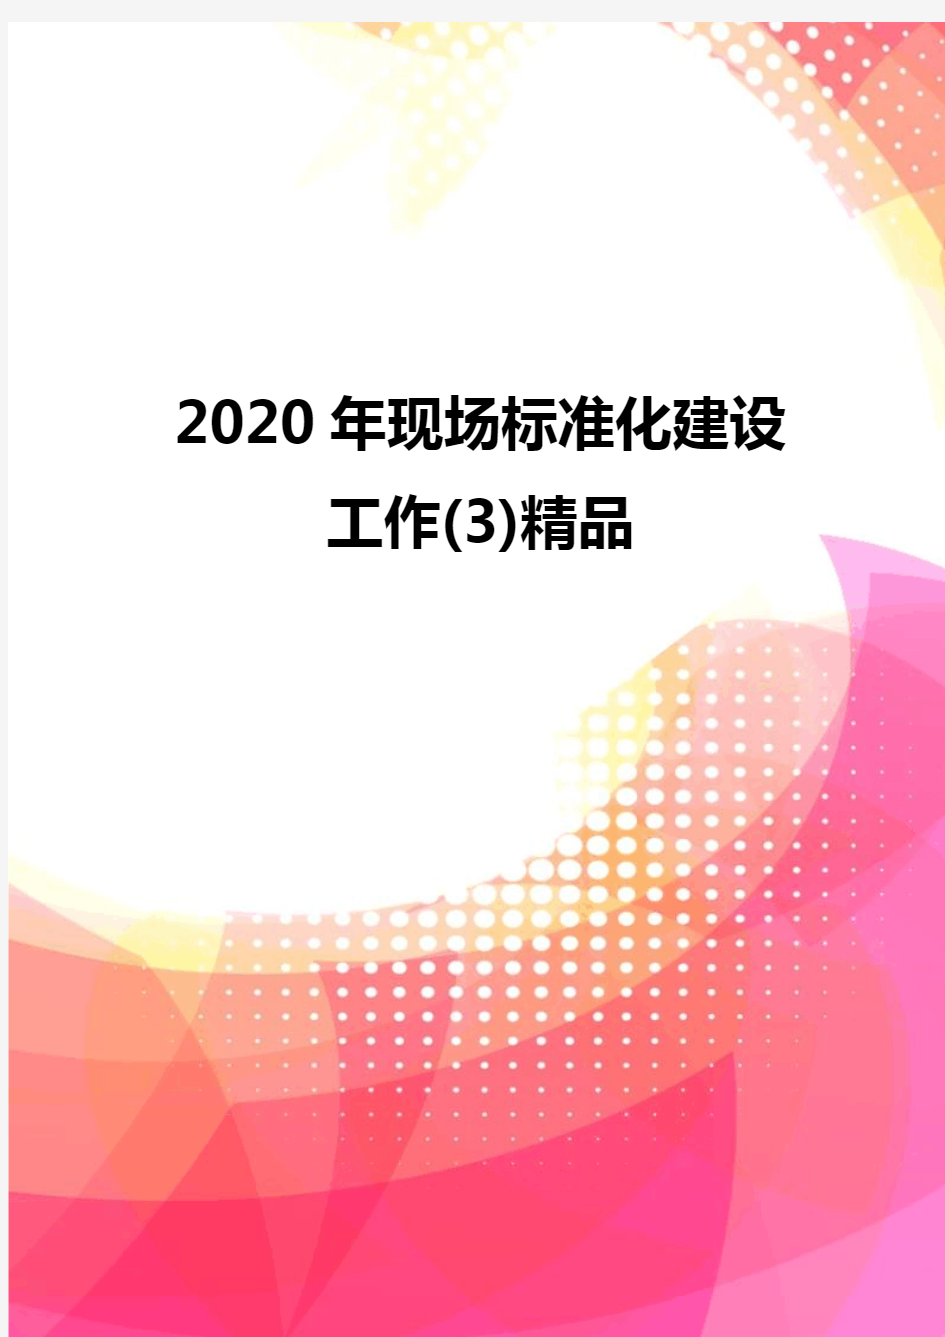 2020年现场标准化建设工作(3)精品